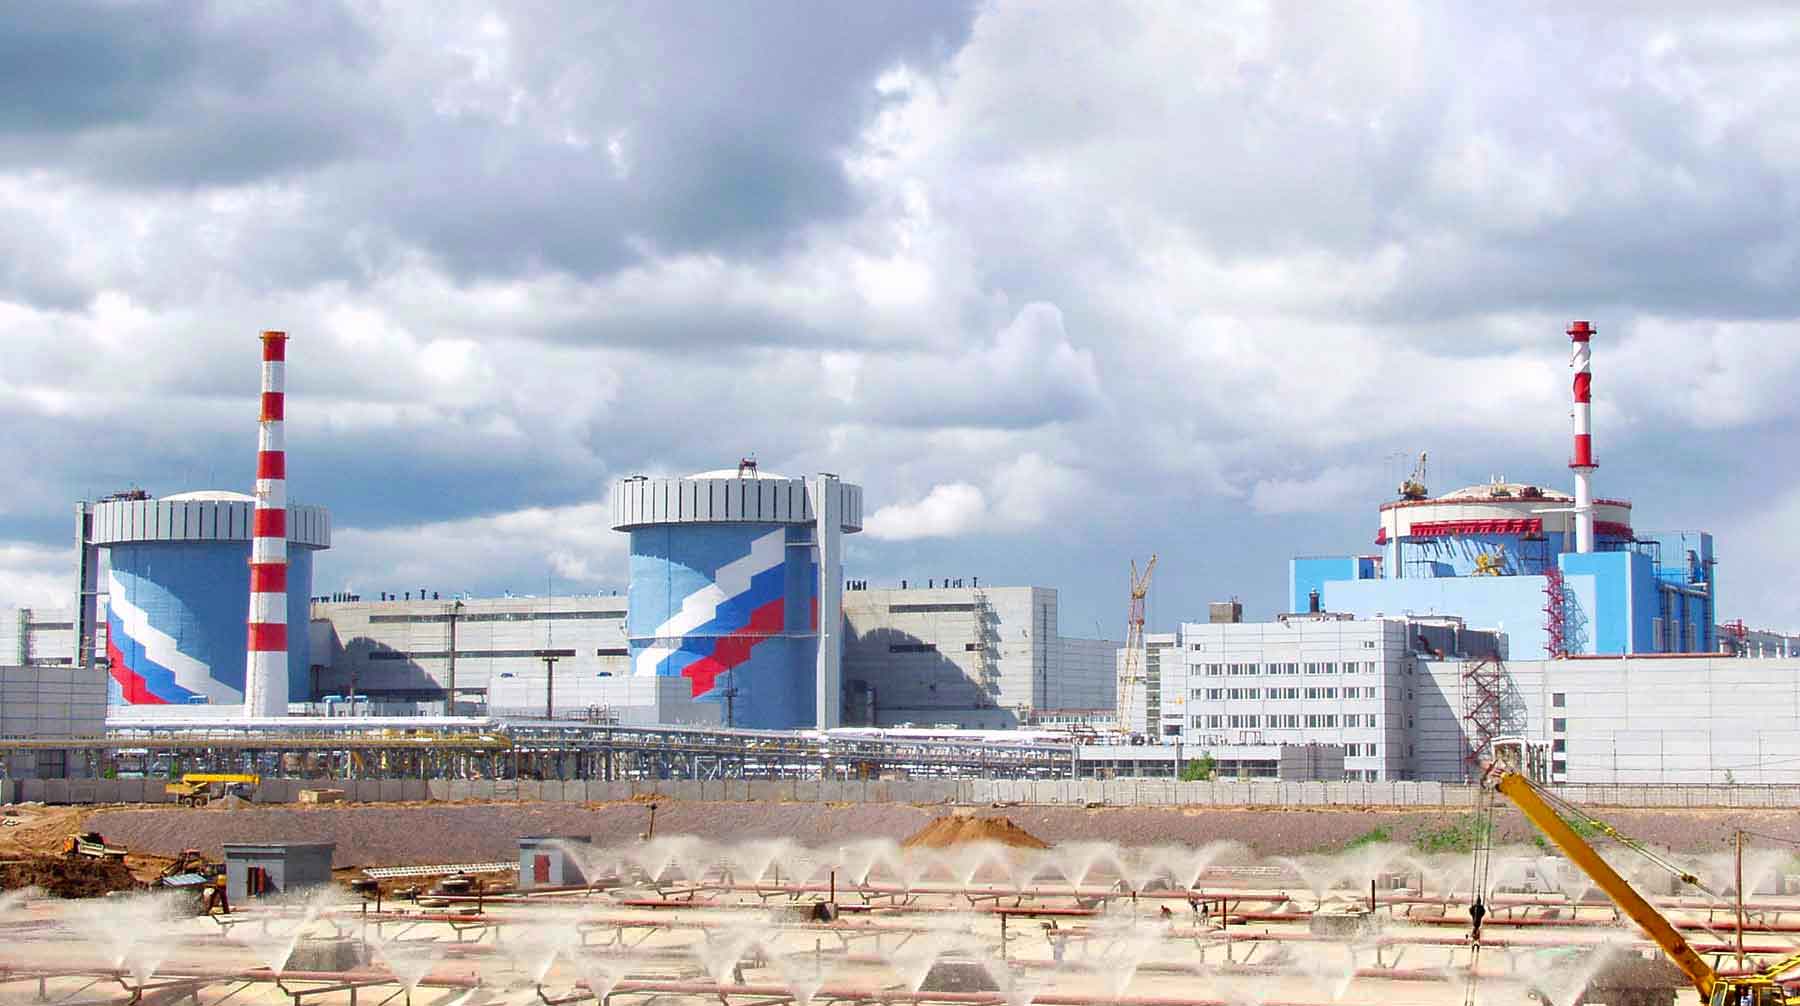 Отключение энергоблоков на атомной электростанции не связано с работой основного оборудования станции, заявили в Росэнергоатоме Фото: © GLOBAL LOOK press / Andrei Solomonov